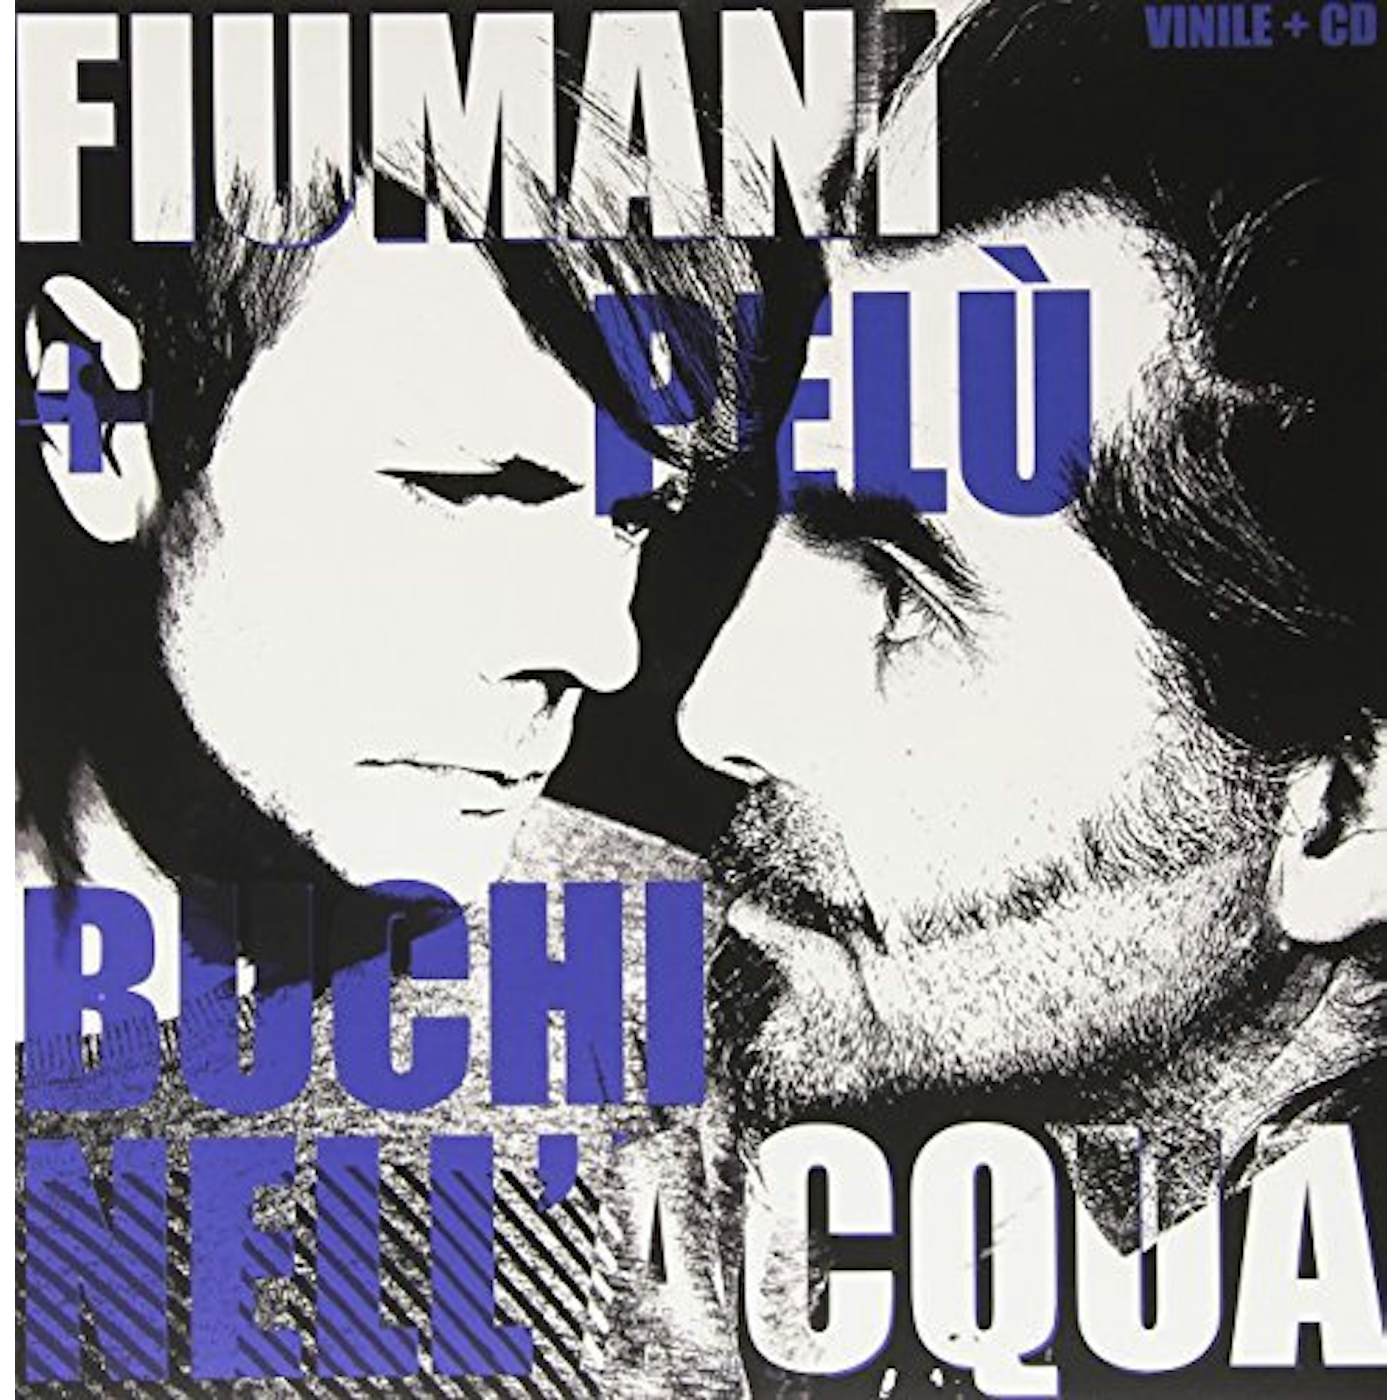 Fiumani + Pelu' Buchi nell'acqua Vinyl Record